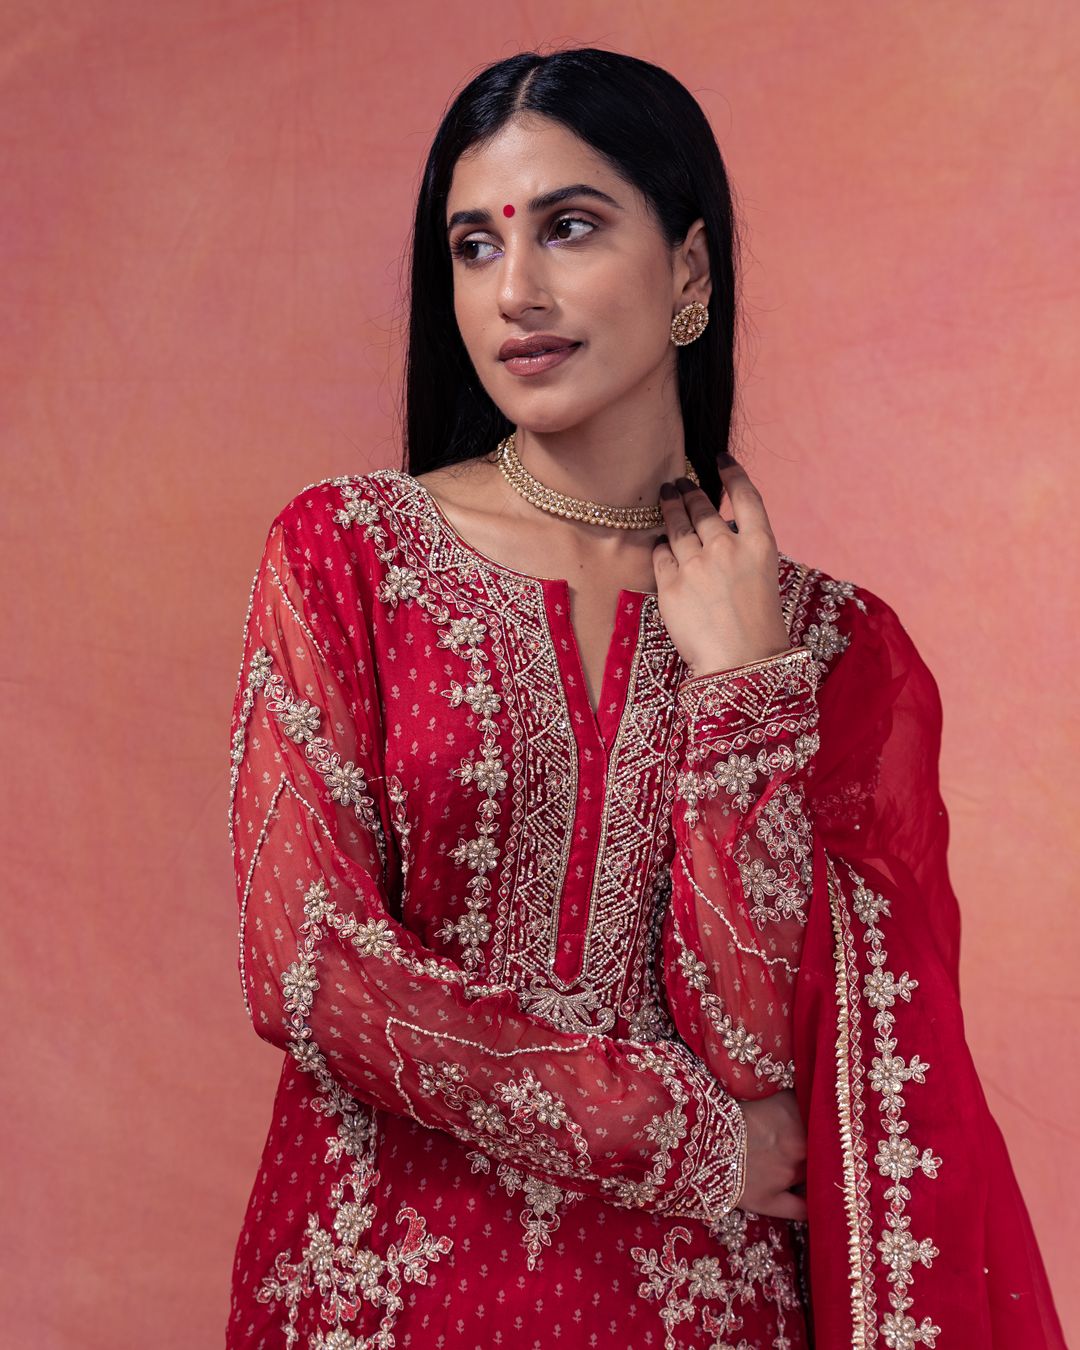 Gulab- Straight Bandhani Kurta  Paired With A Crushed Chanderi Lehenga - NAMEH by Amreen